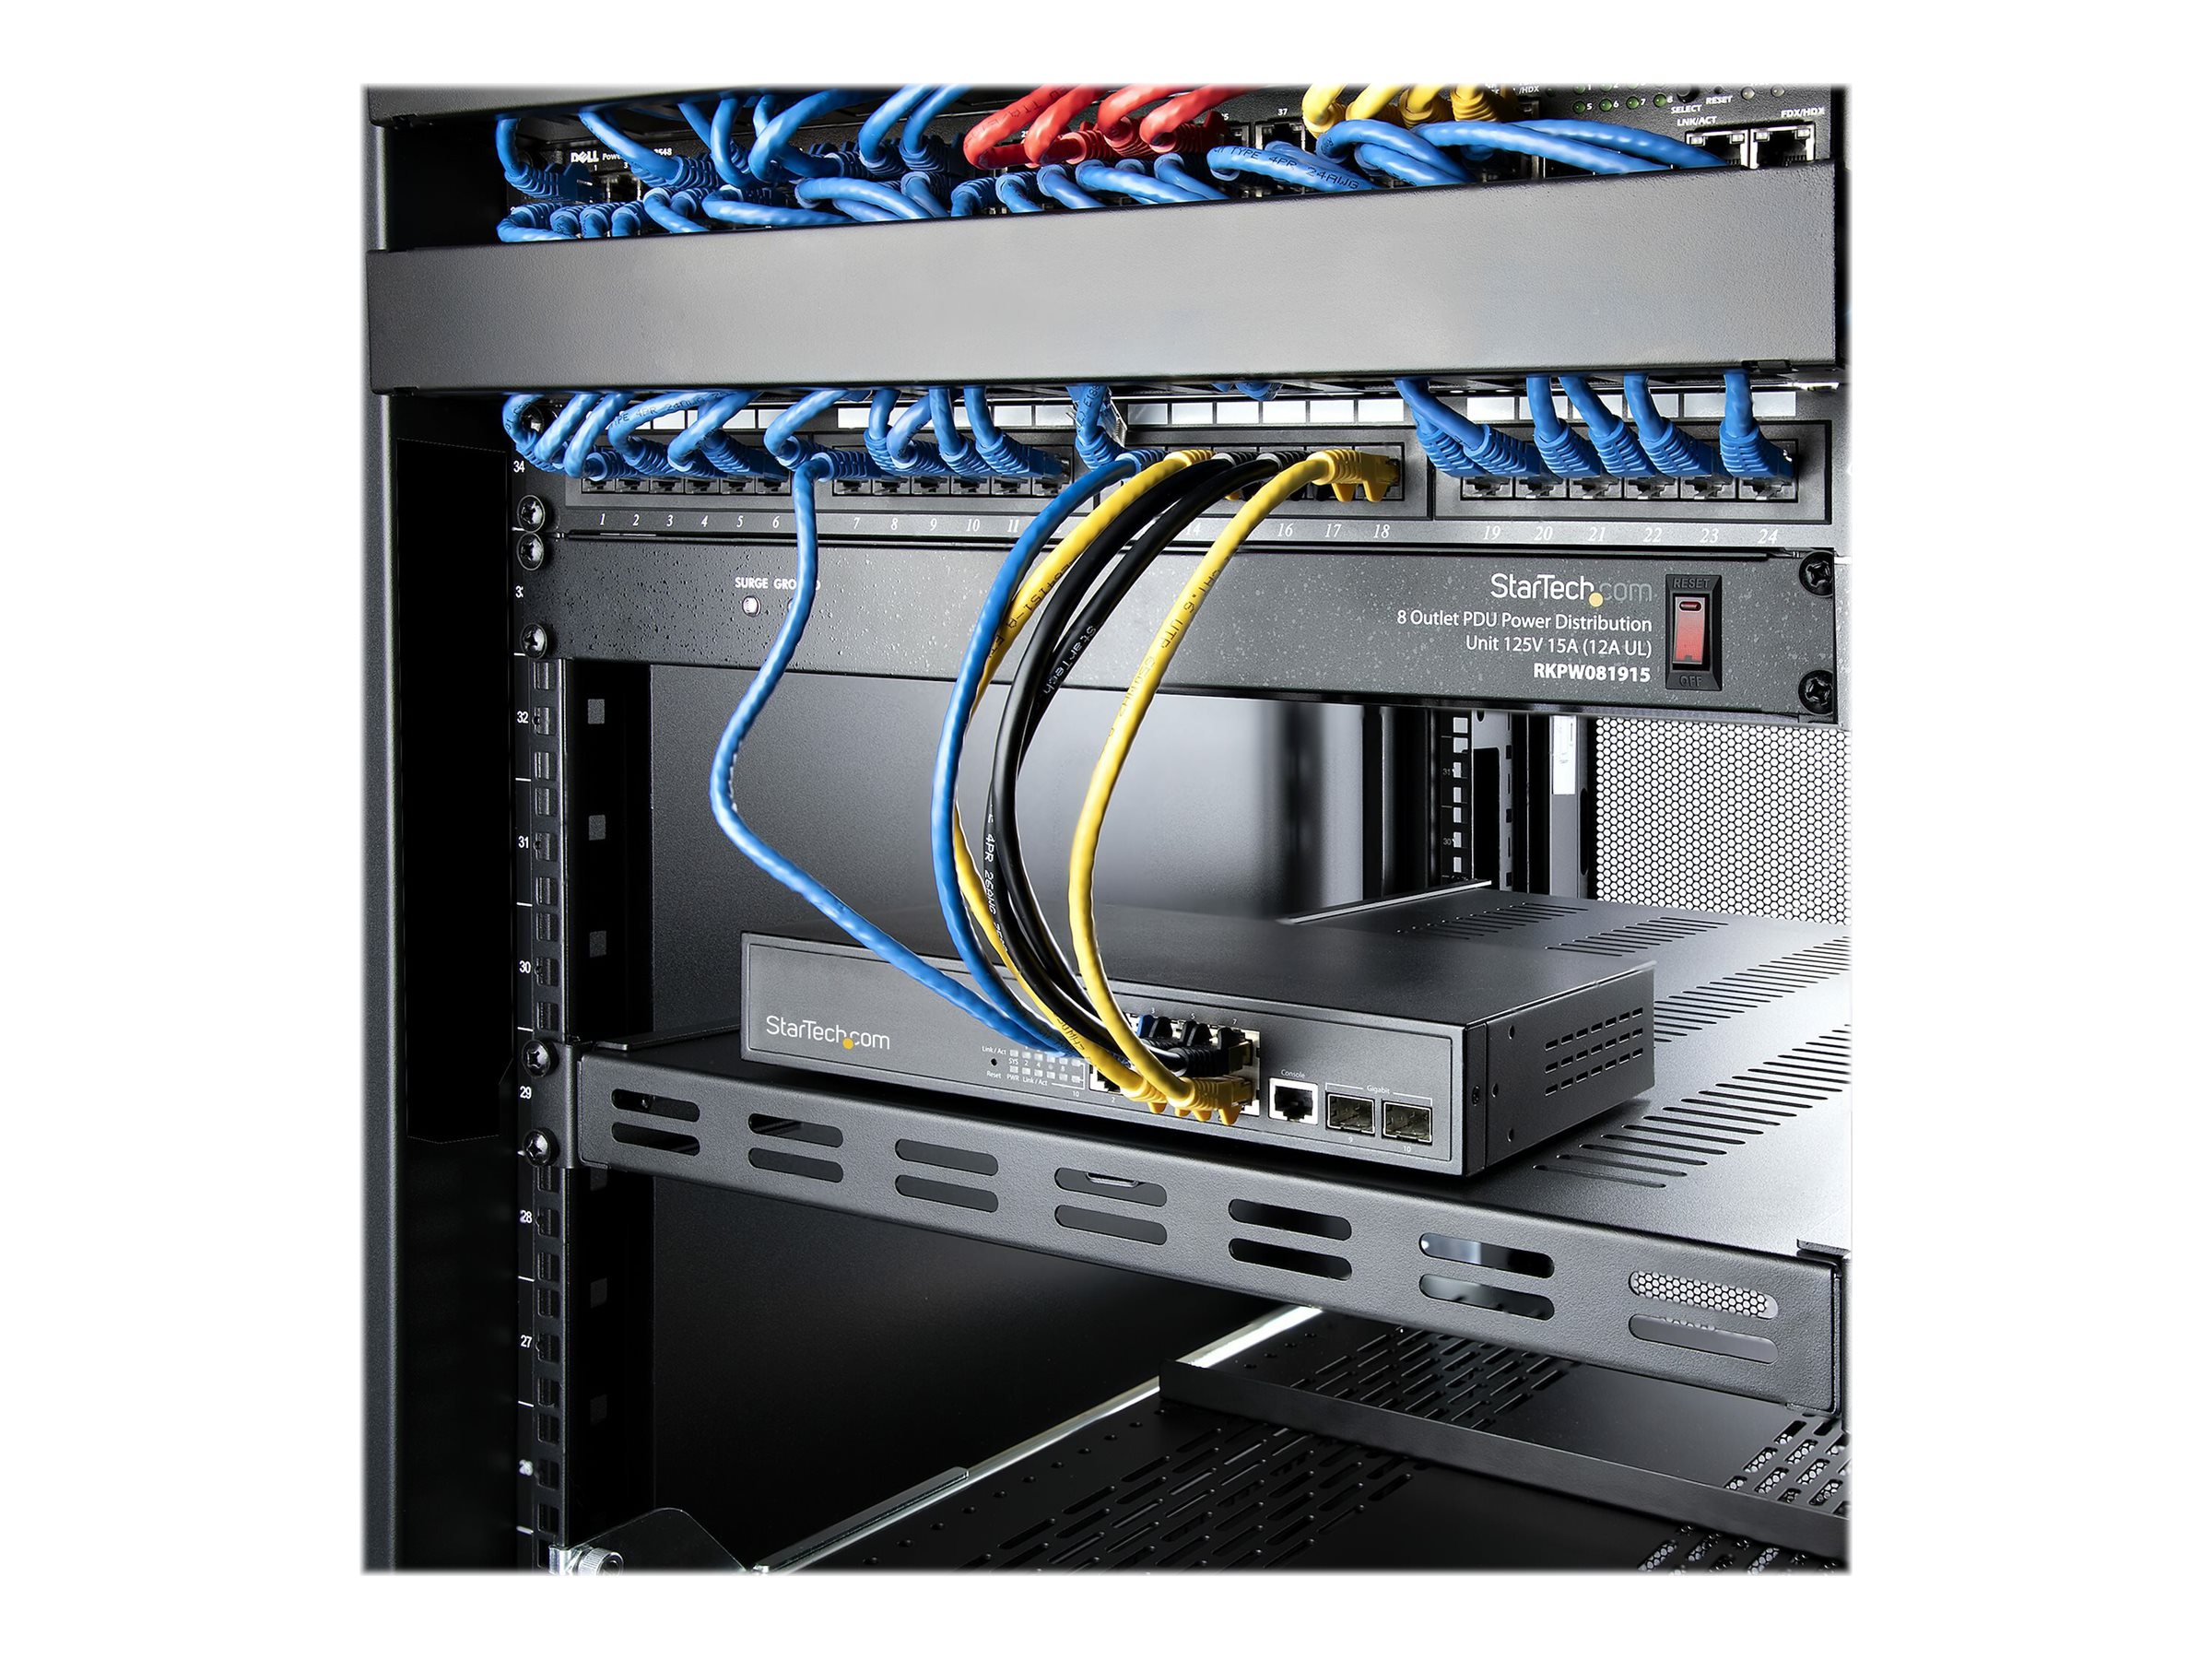 StarTech.com Server Rack Shelf - 1U - Adjustable Mount Depth - Heavy Duty - Étagère pour rack - noir - 1U - 19" - pour P/N: RK1233BKM, RK2433BKM, RK2537BKM, RK3236BKF, RK4236BKB, RK4242BK24, RK4242BK30 - ADJSHELFHDV - Accessoires pour serveur